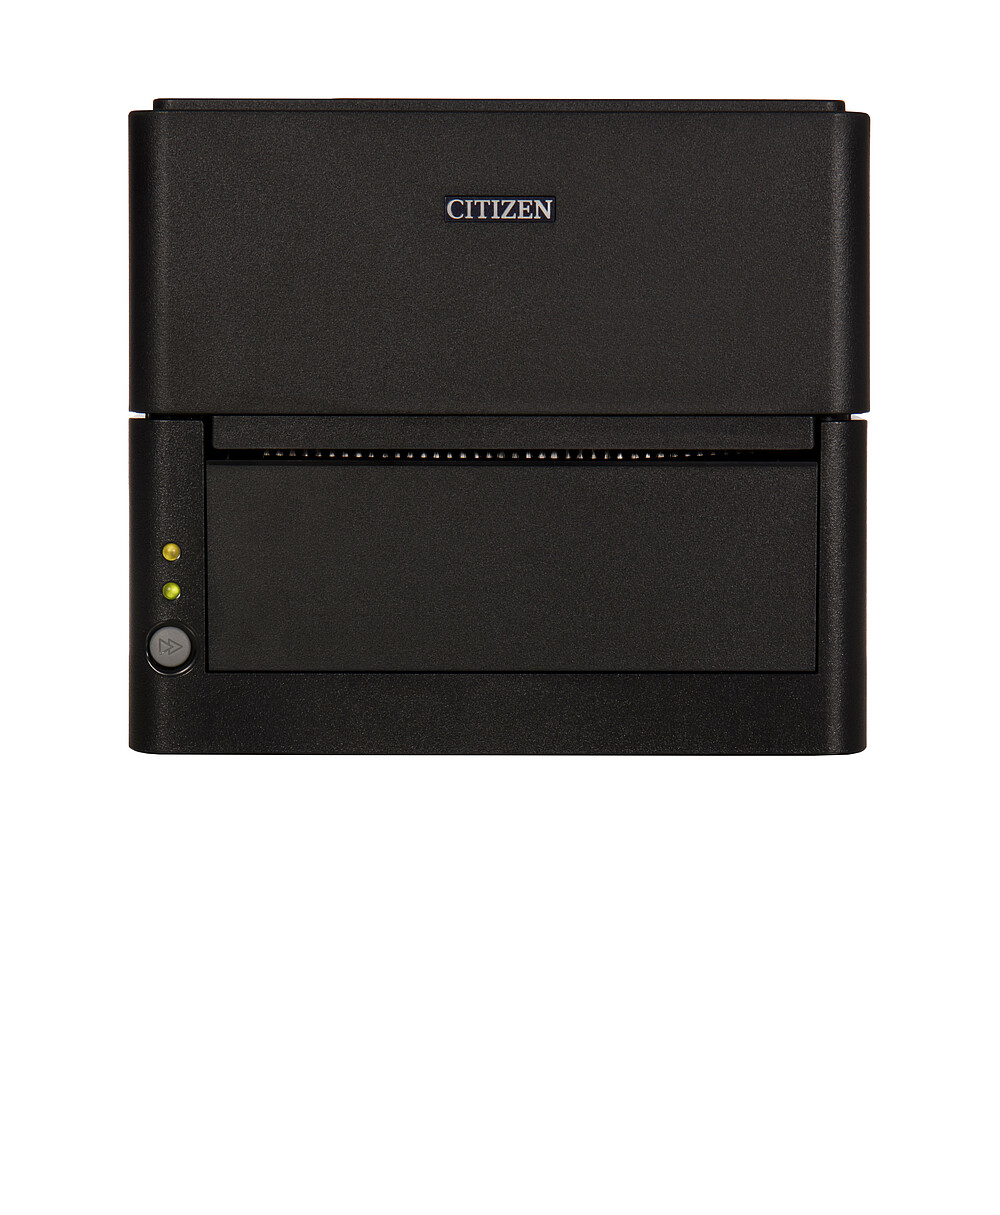 Citizen Принтер для печати этикеток CL-300 черный вид спереди